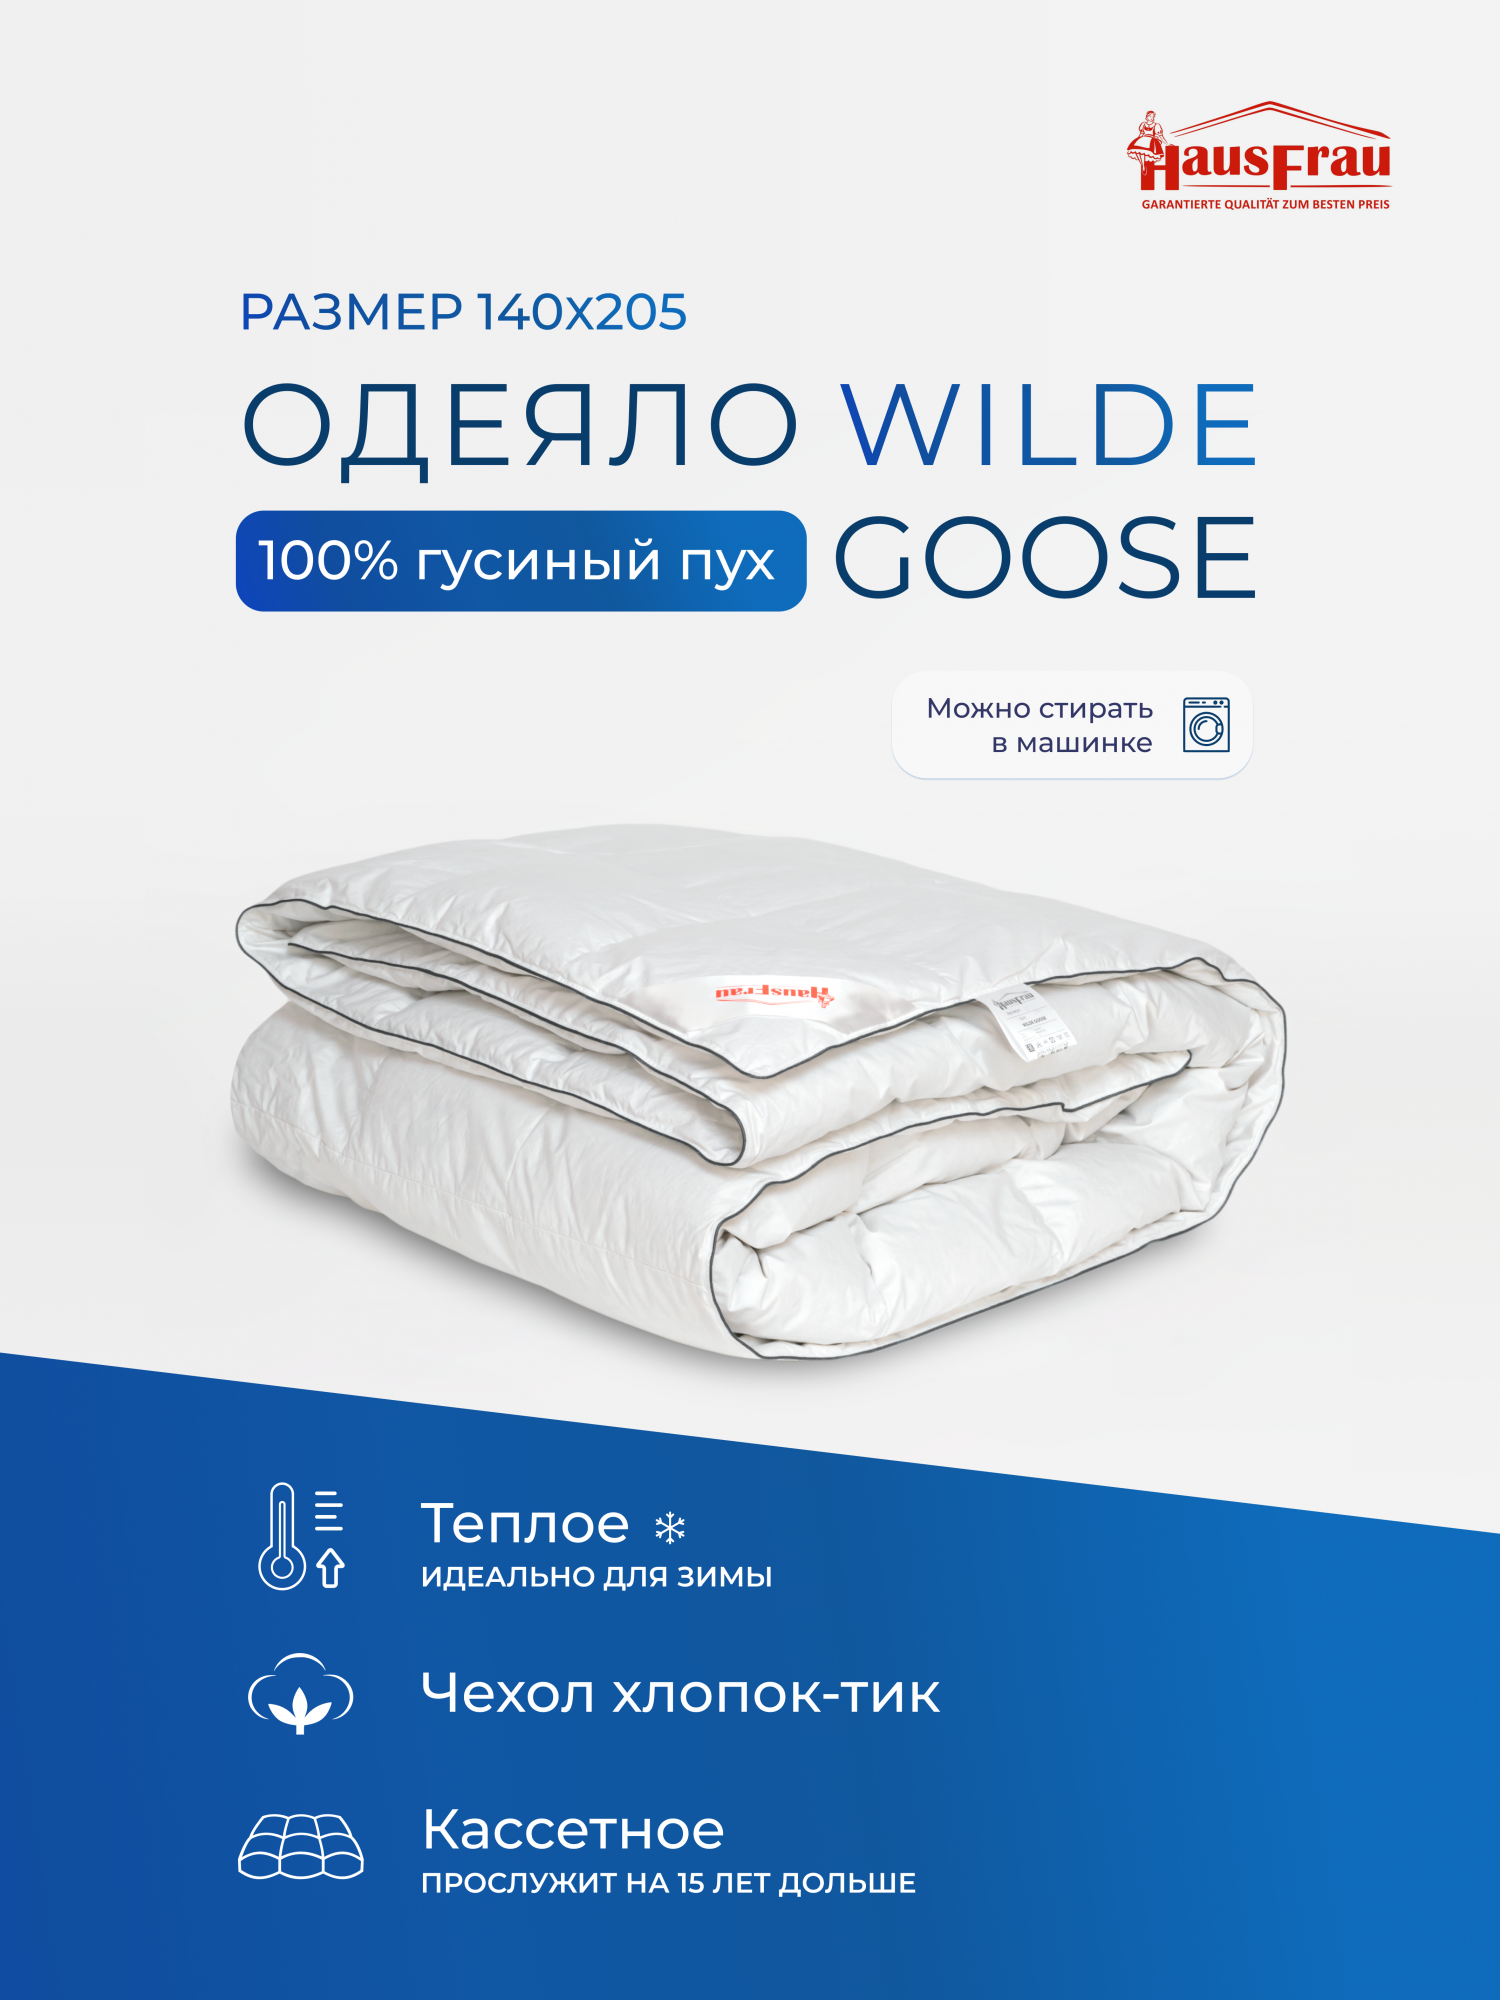 Одеяло HausFrau Wilde Goose кассетное пуховое теплое 140х205